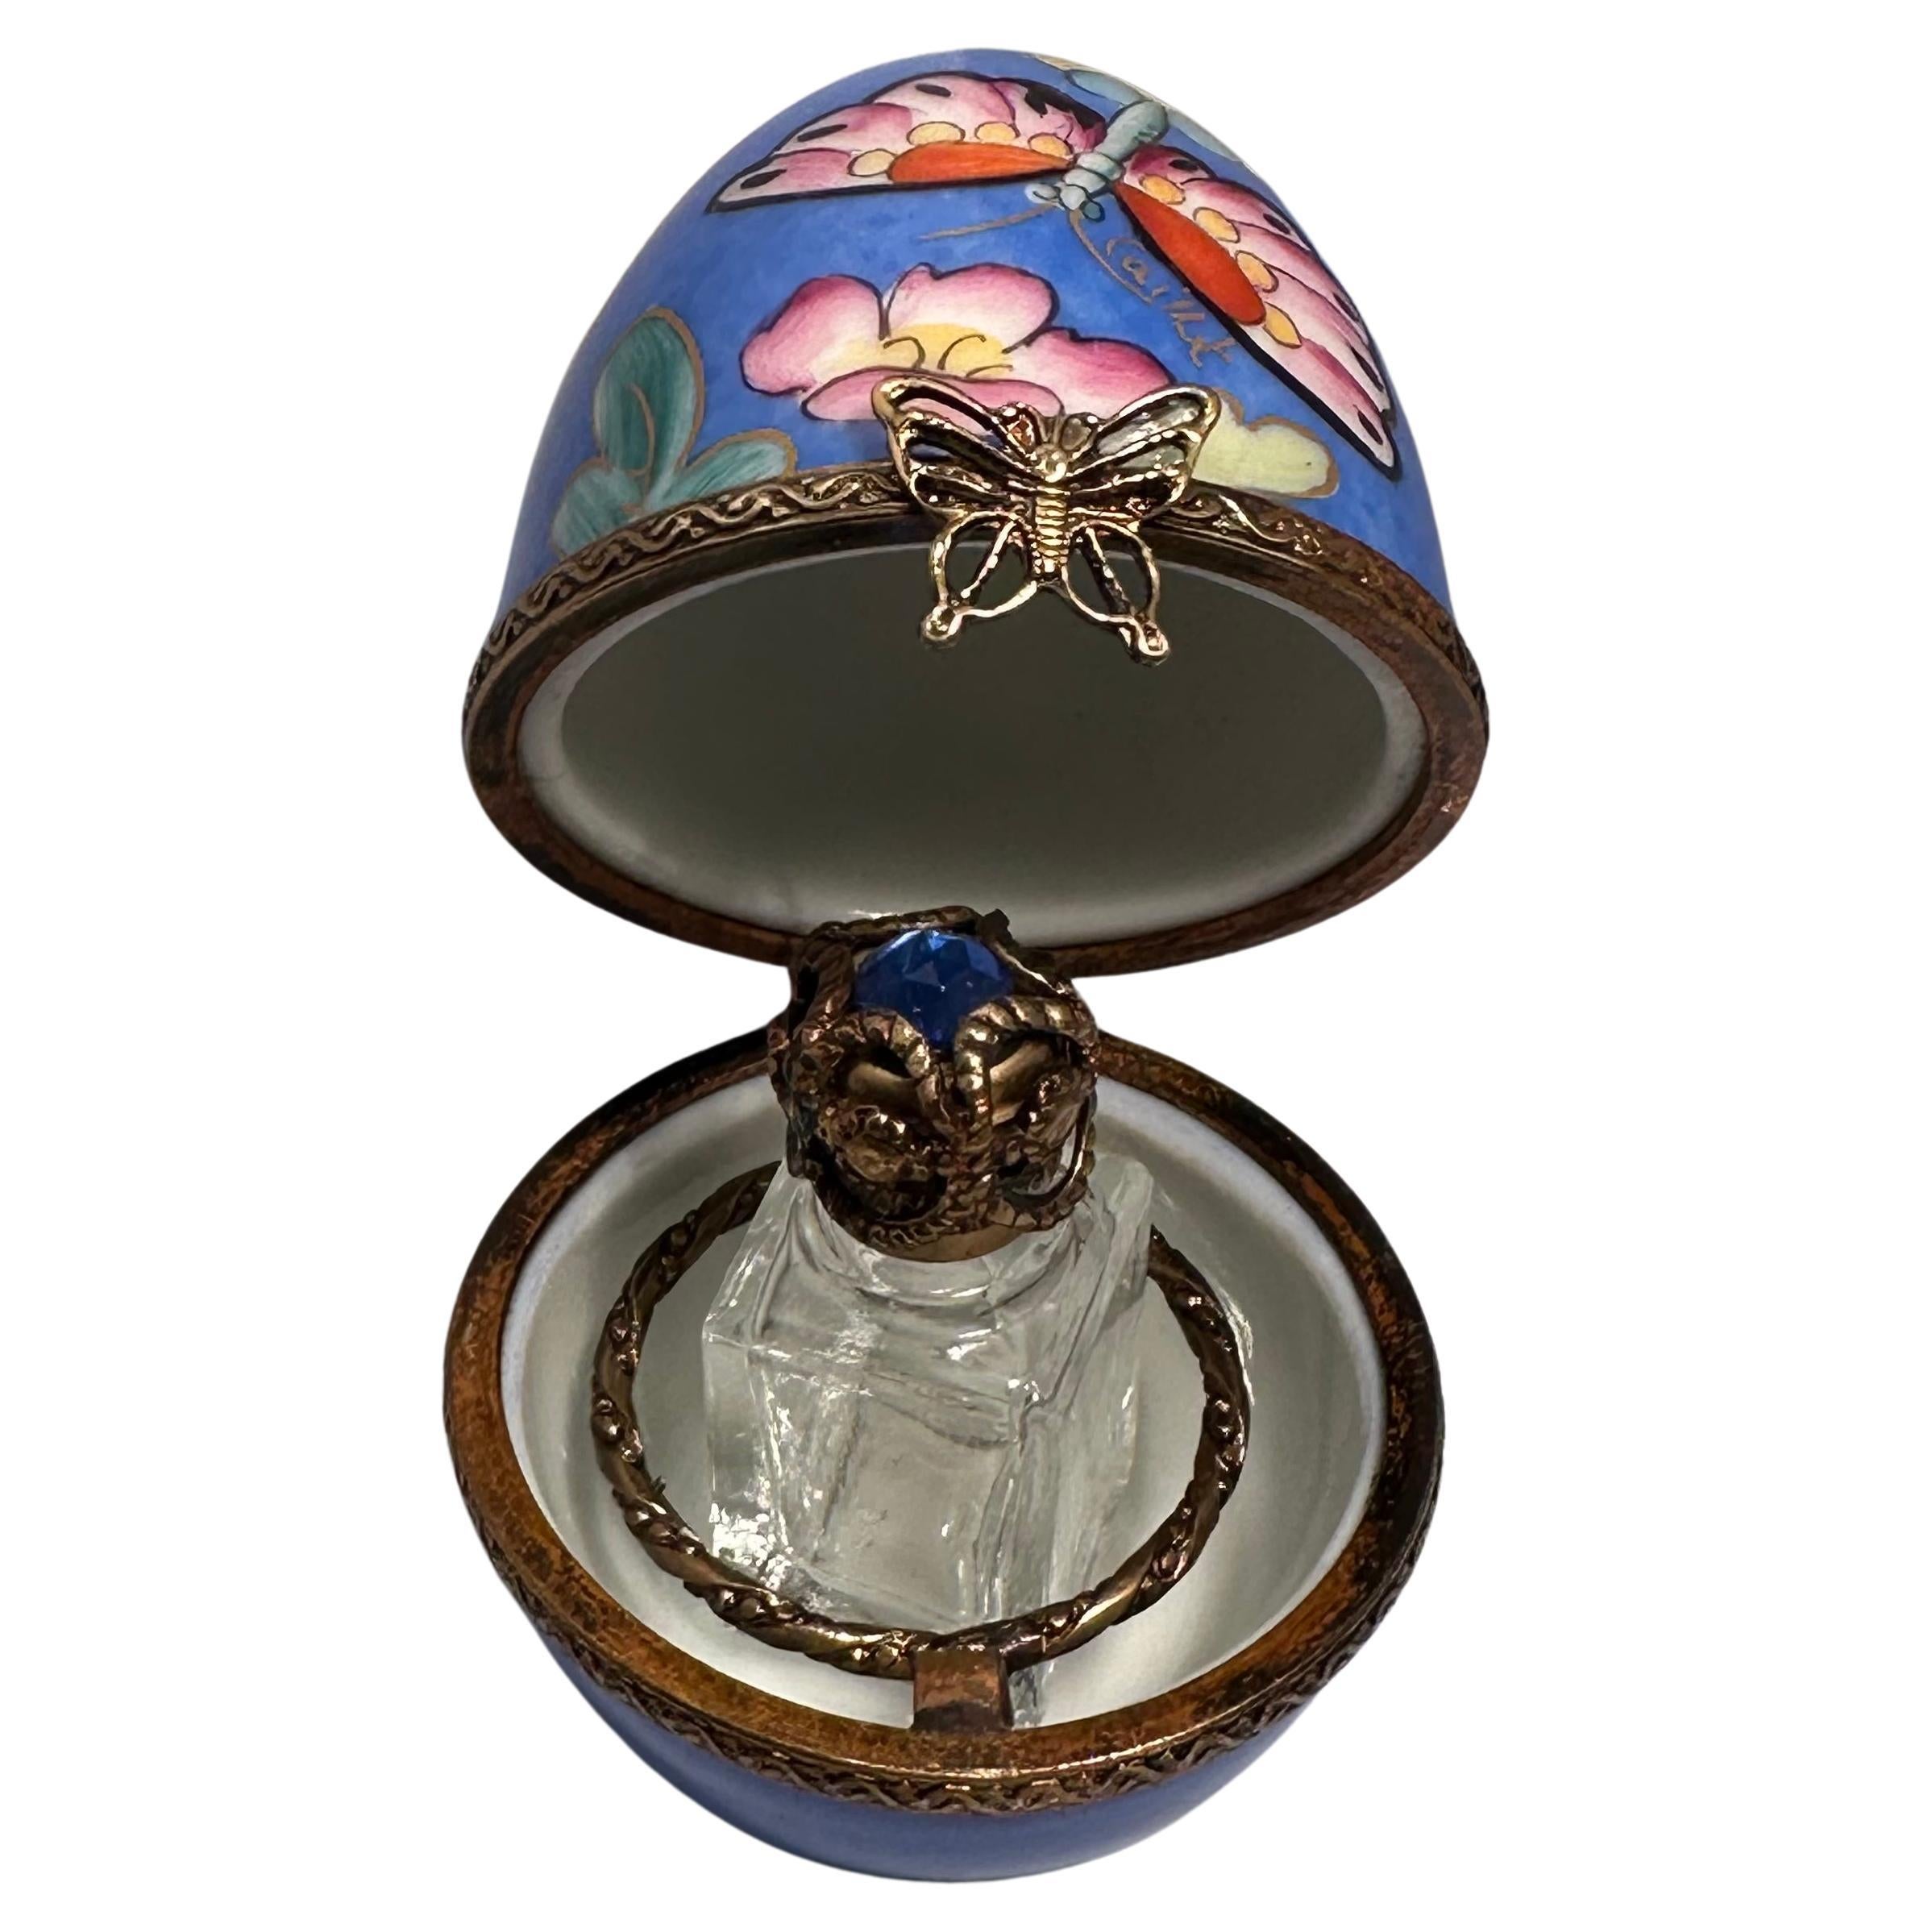 Die eiförmige Parfümdose aus Limoges-Porzellan mit Scharnierdeckel ist mit hübschen polychromen Blumen und einem Butterfly-Motiv auf einem beruhigenden blauen Hintergrund verziert und von Hand bemalt. Die Porzellandose und der Deckel haben Ränder